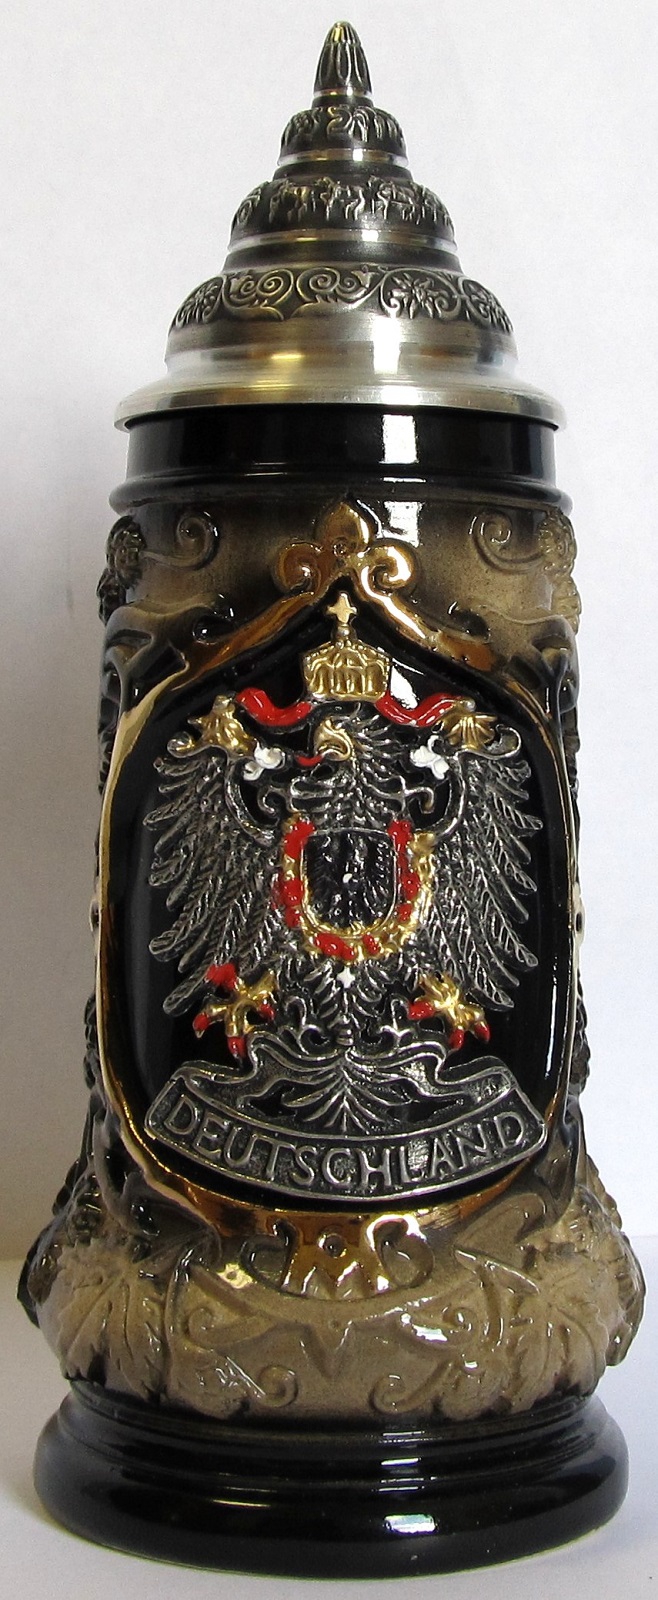 Deutchland Germany Black and Gold Eagle Crest Souvenir German Beer Stein .125 L